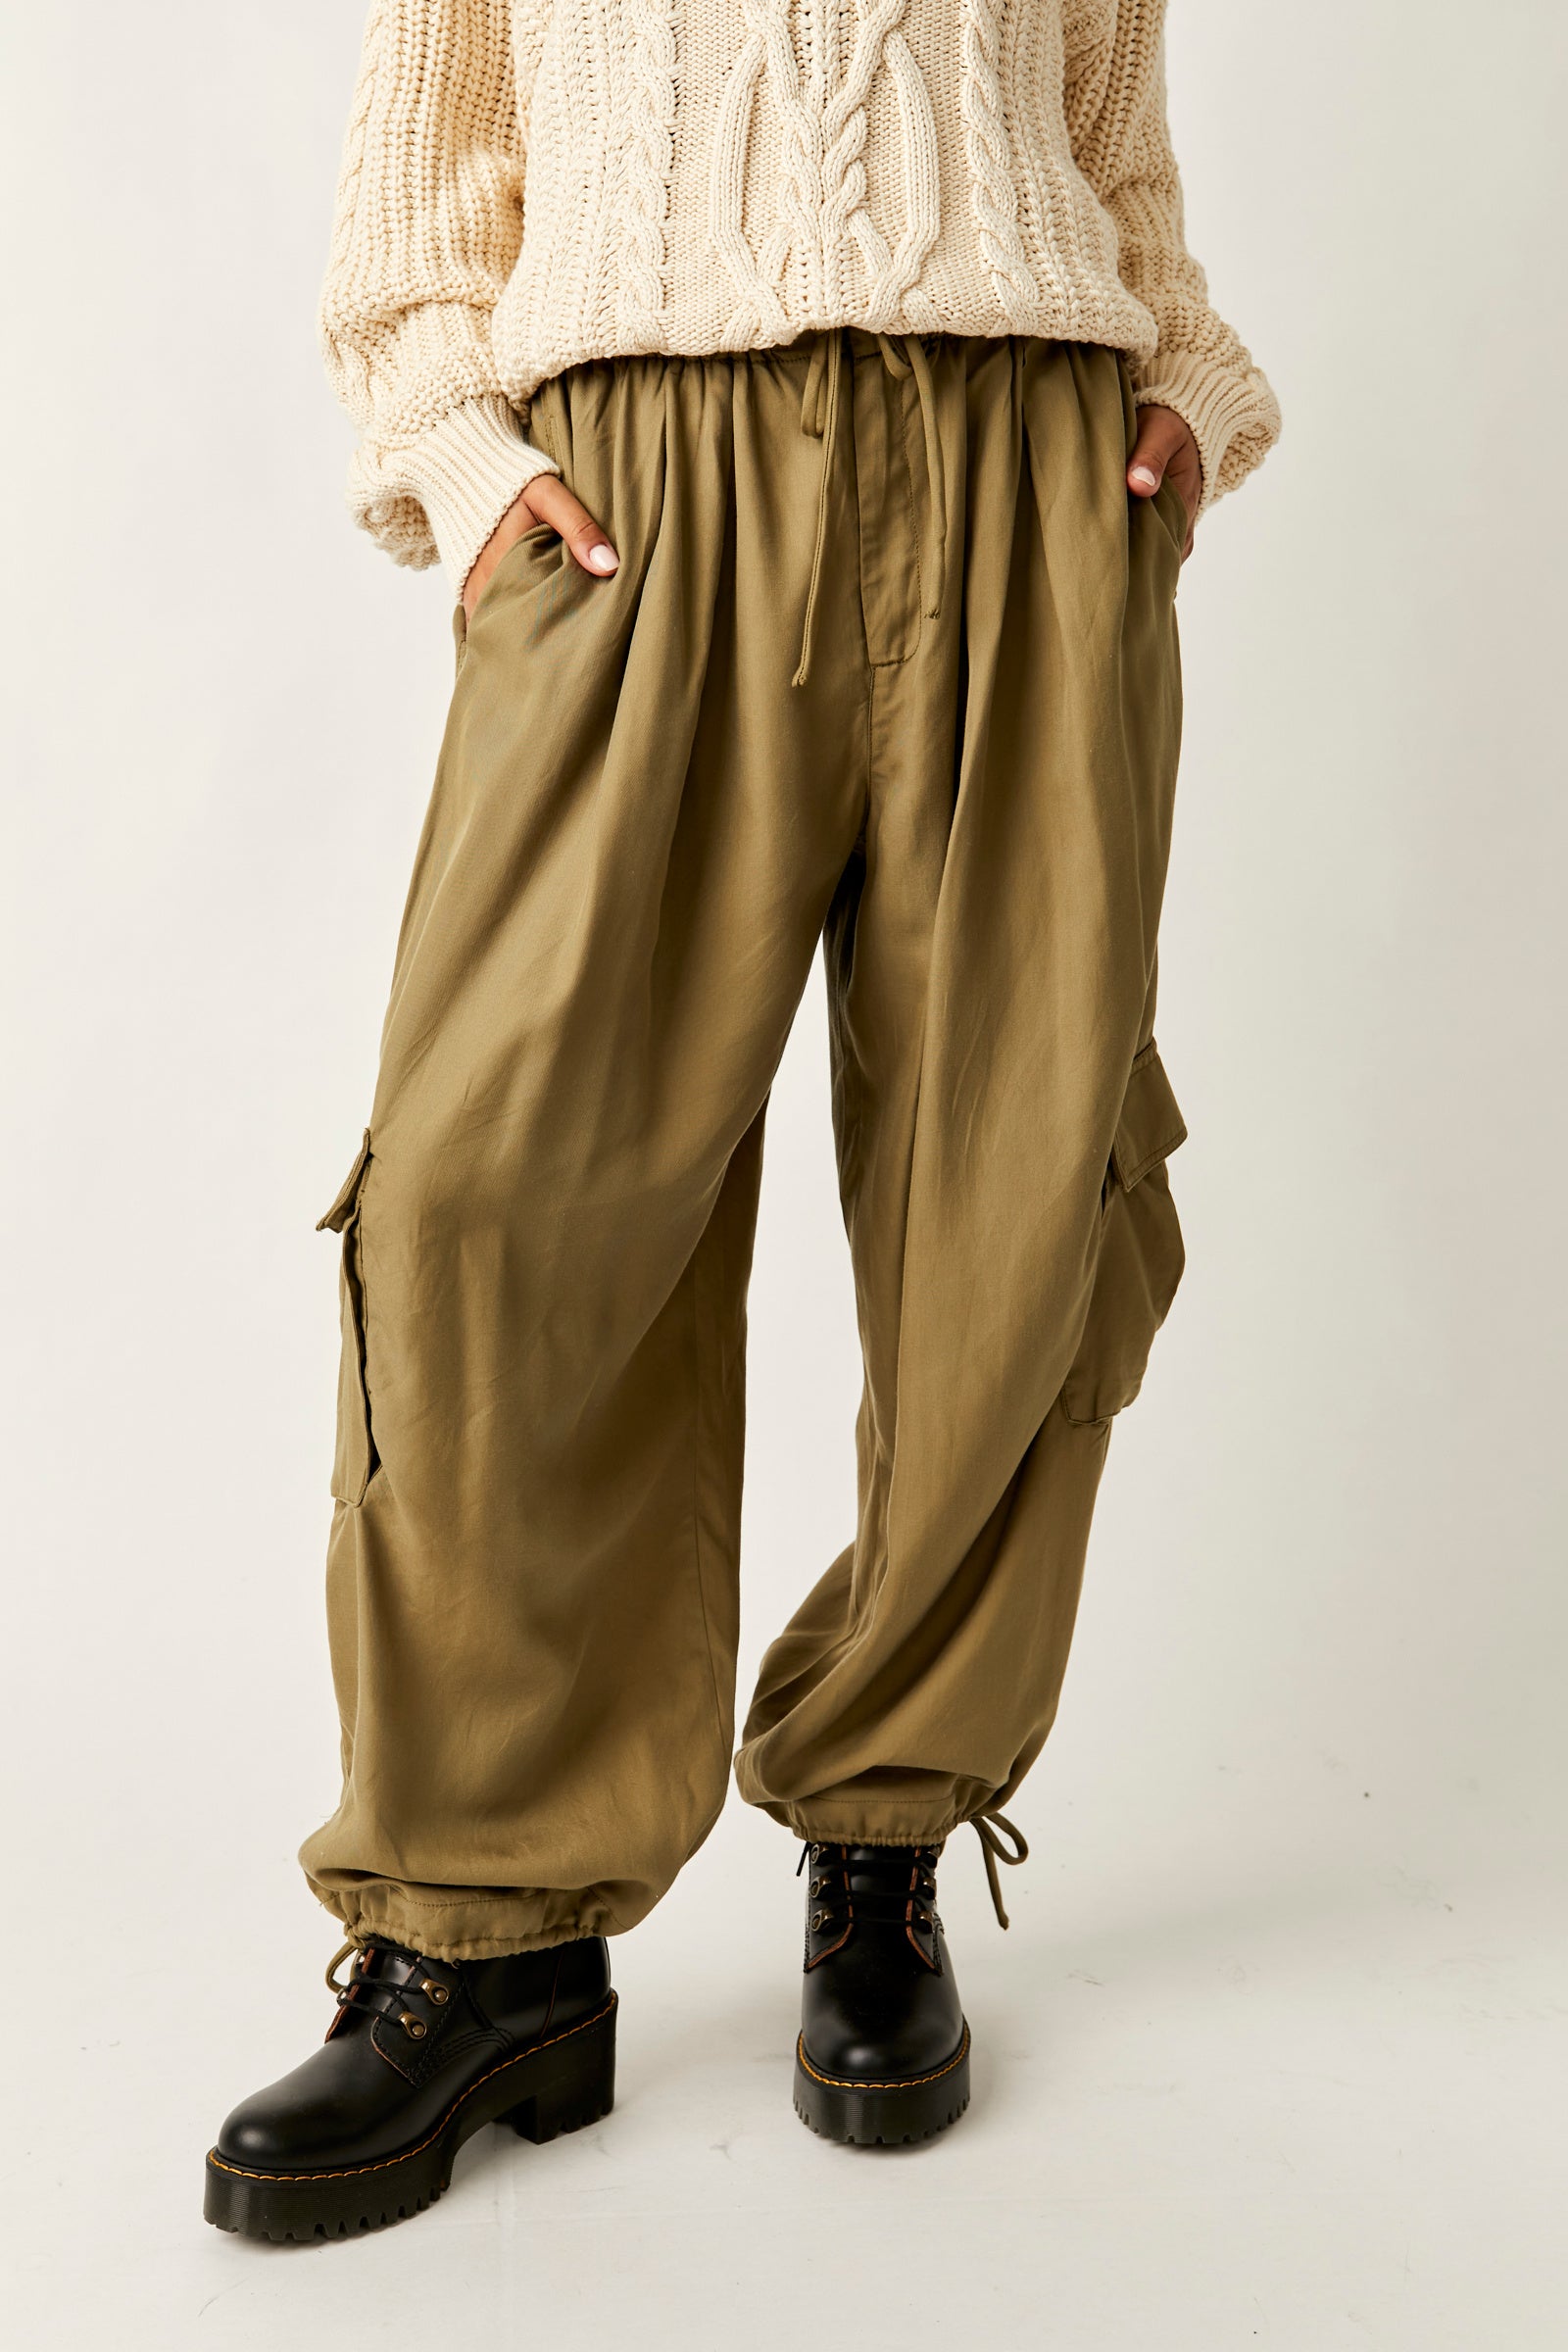 Checkered Pants - Brown - Pomelo Fashion